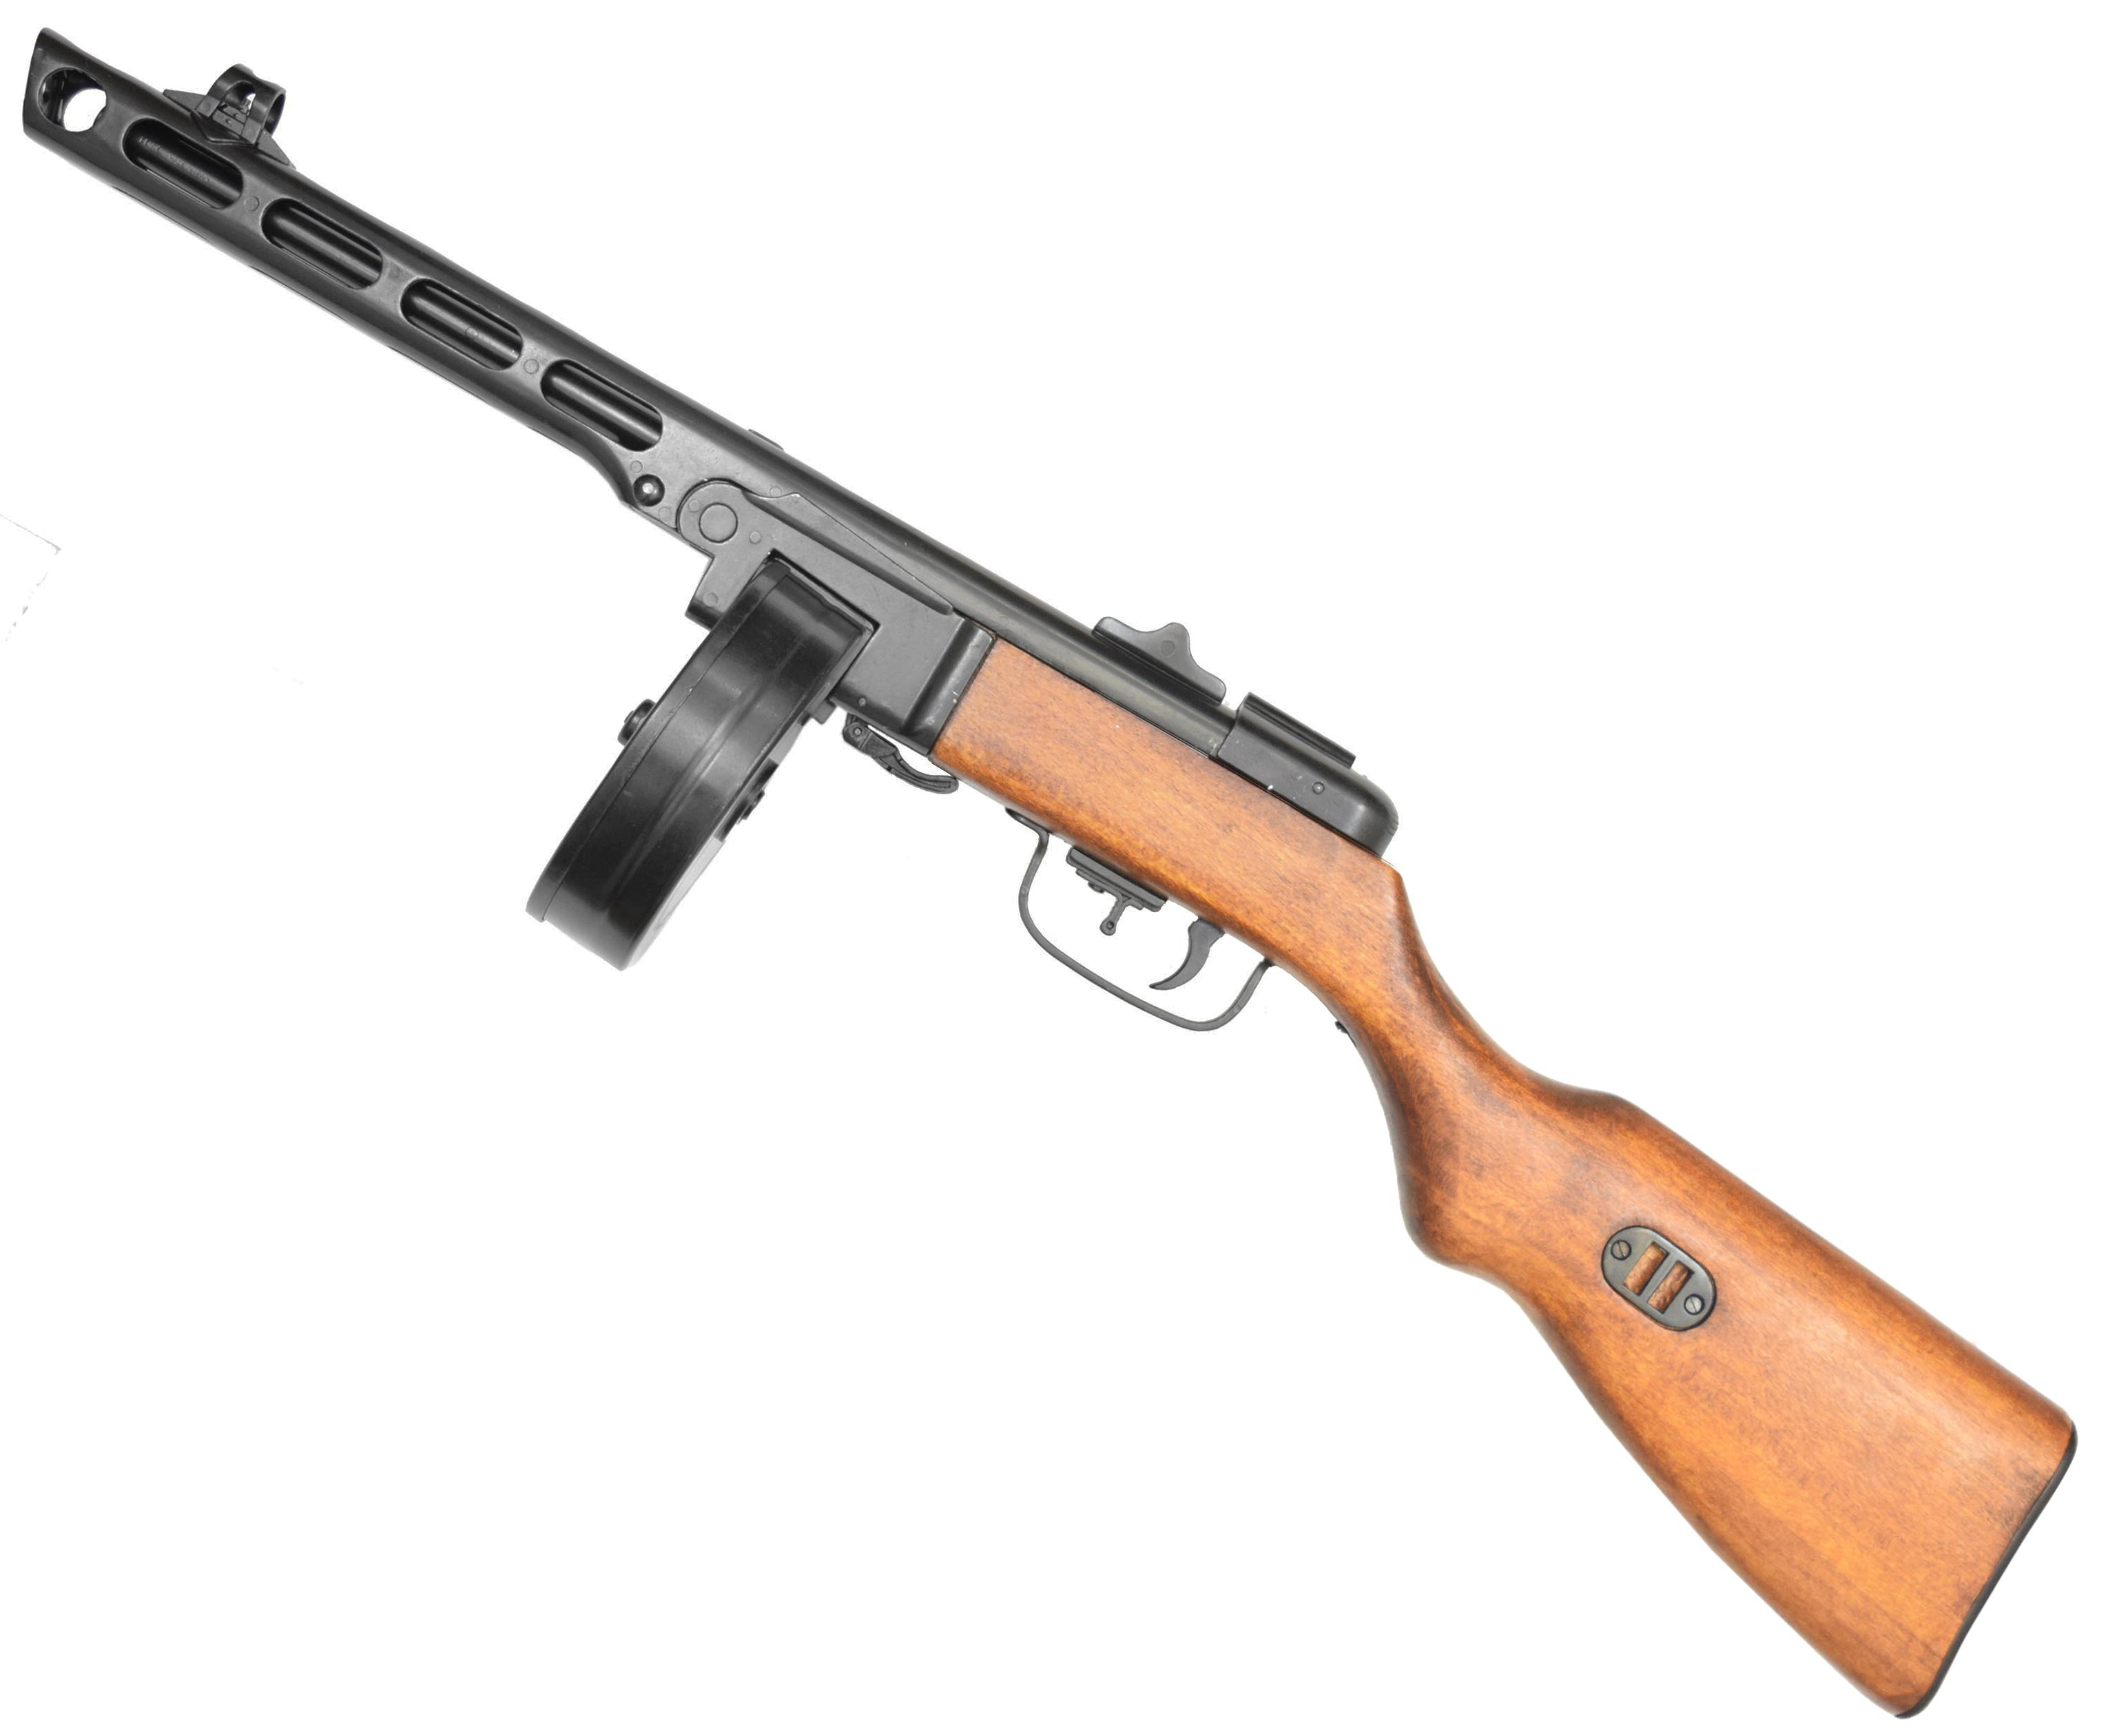 Макет пистолета-пулемета Шпагина (ММГ ППШ 41, DE 1301) купить в Москве иСПБ, цена 21000 руб. Доставка по РФ!